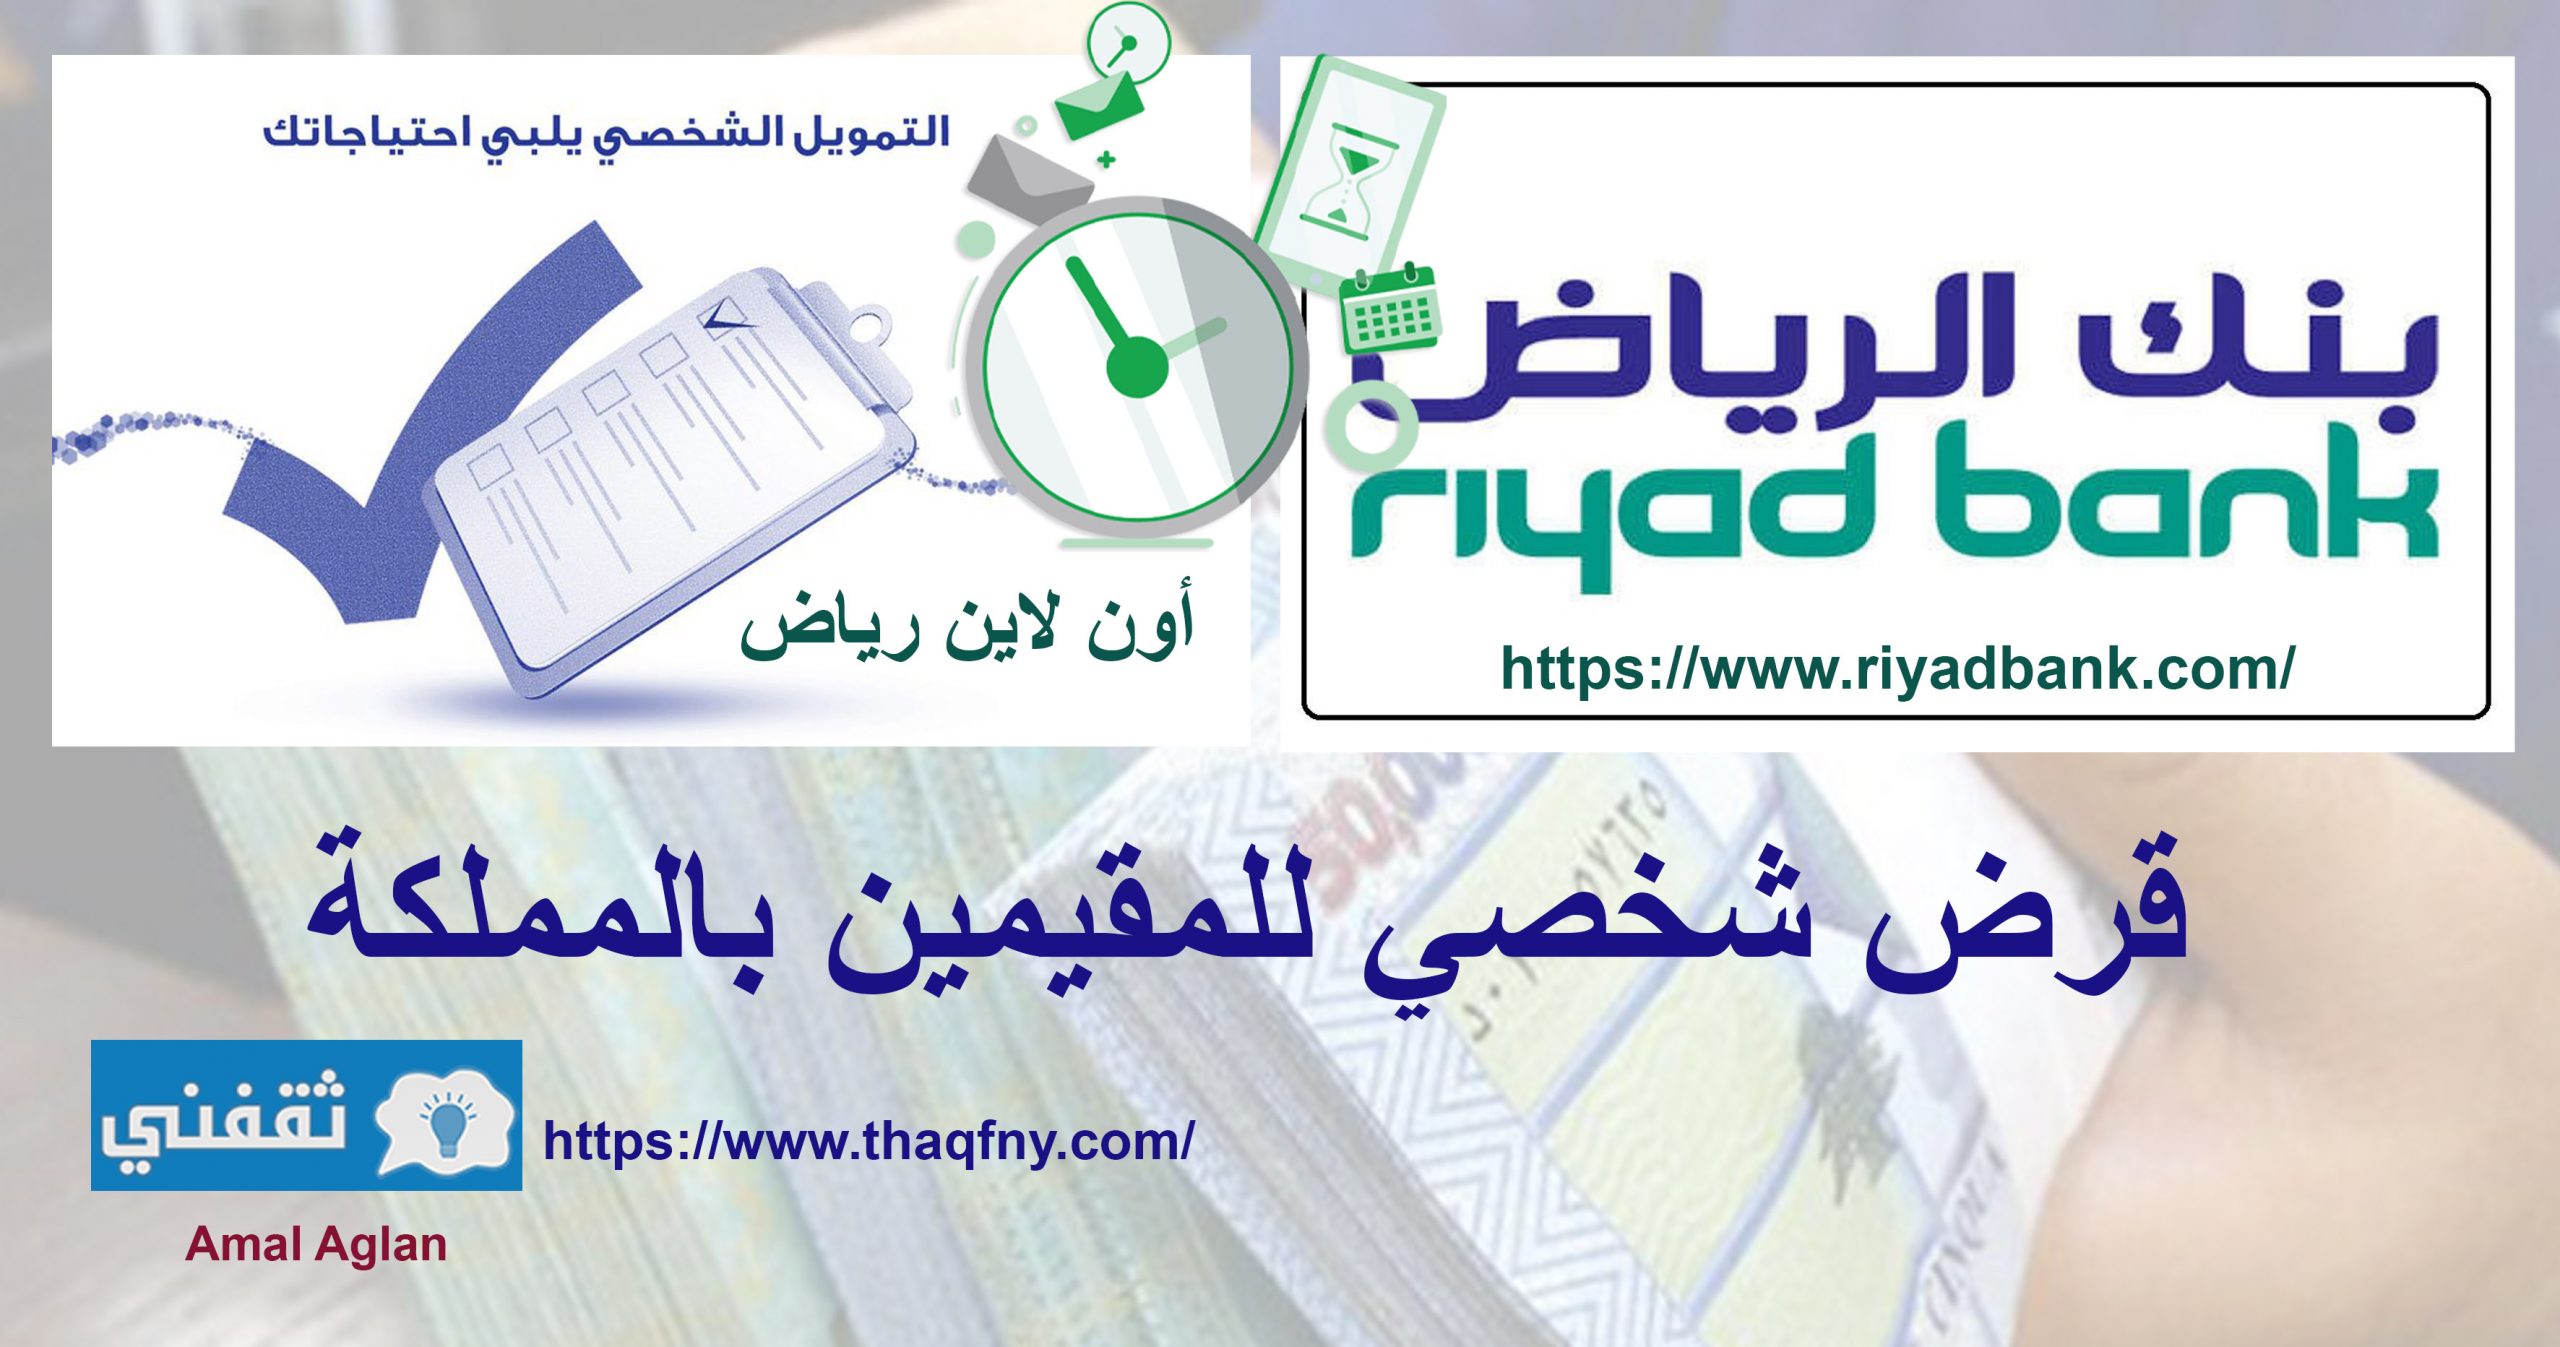 شروط بنك الرياض للحصول علي قرض شخصي للمقيمين بالمملكة